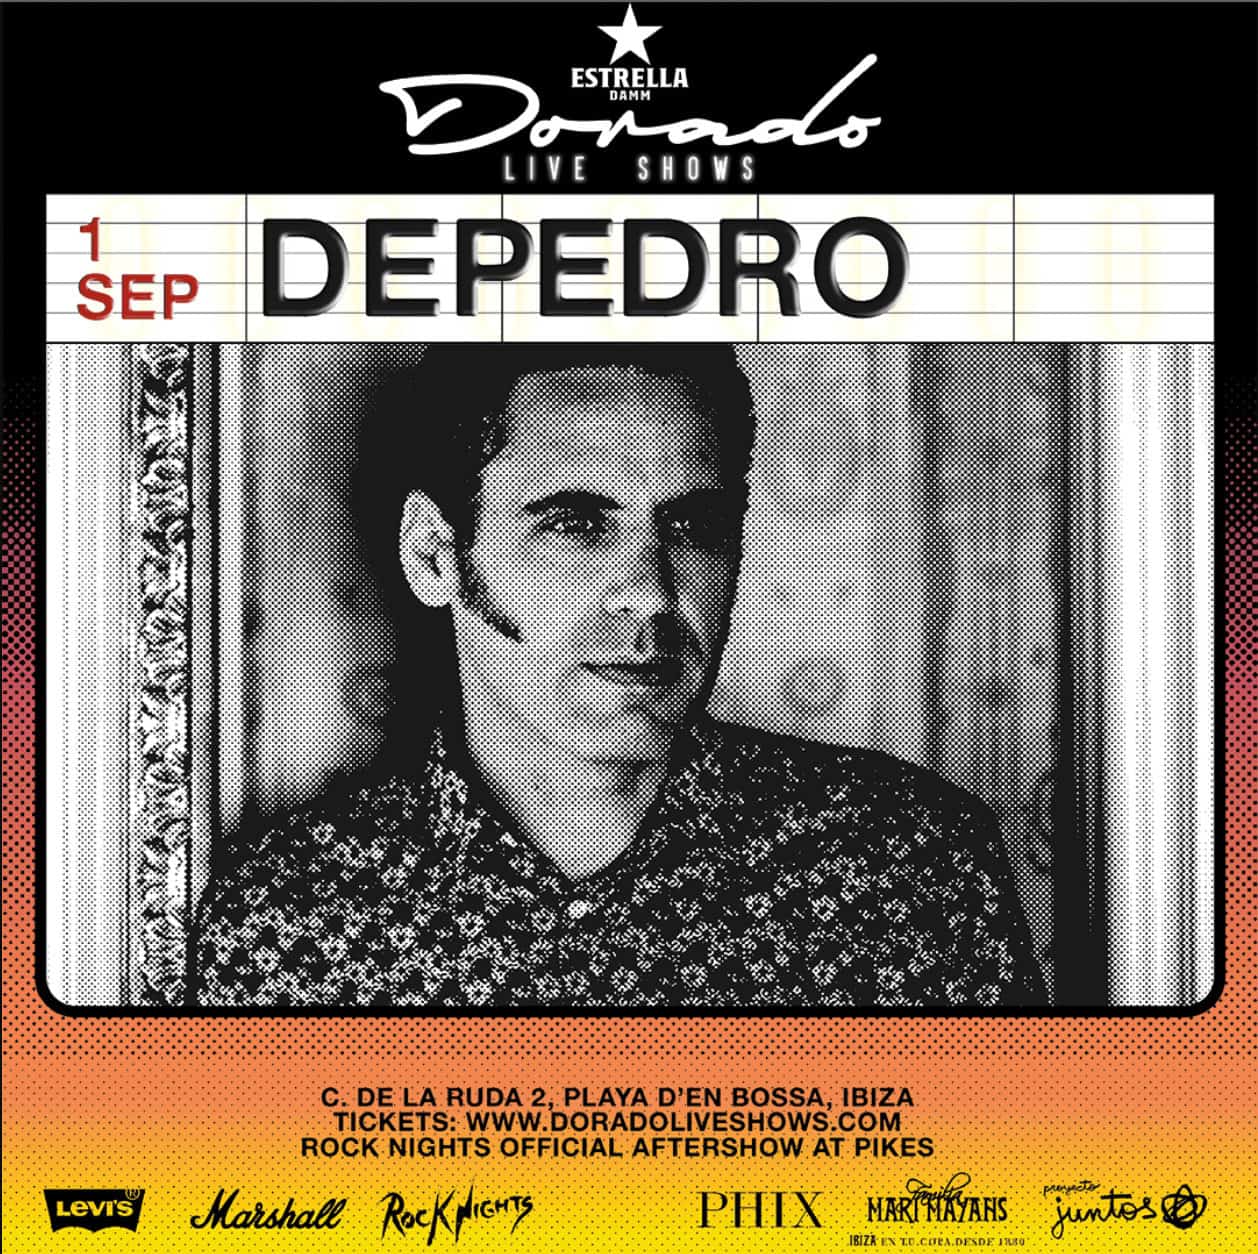 Depedro at the Dorado Live Shows in Santos Ibiza Ibiza